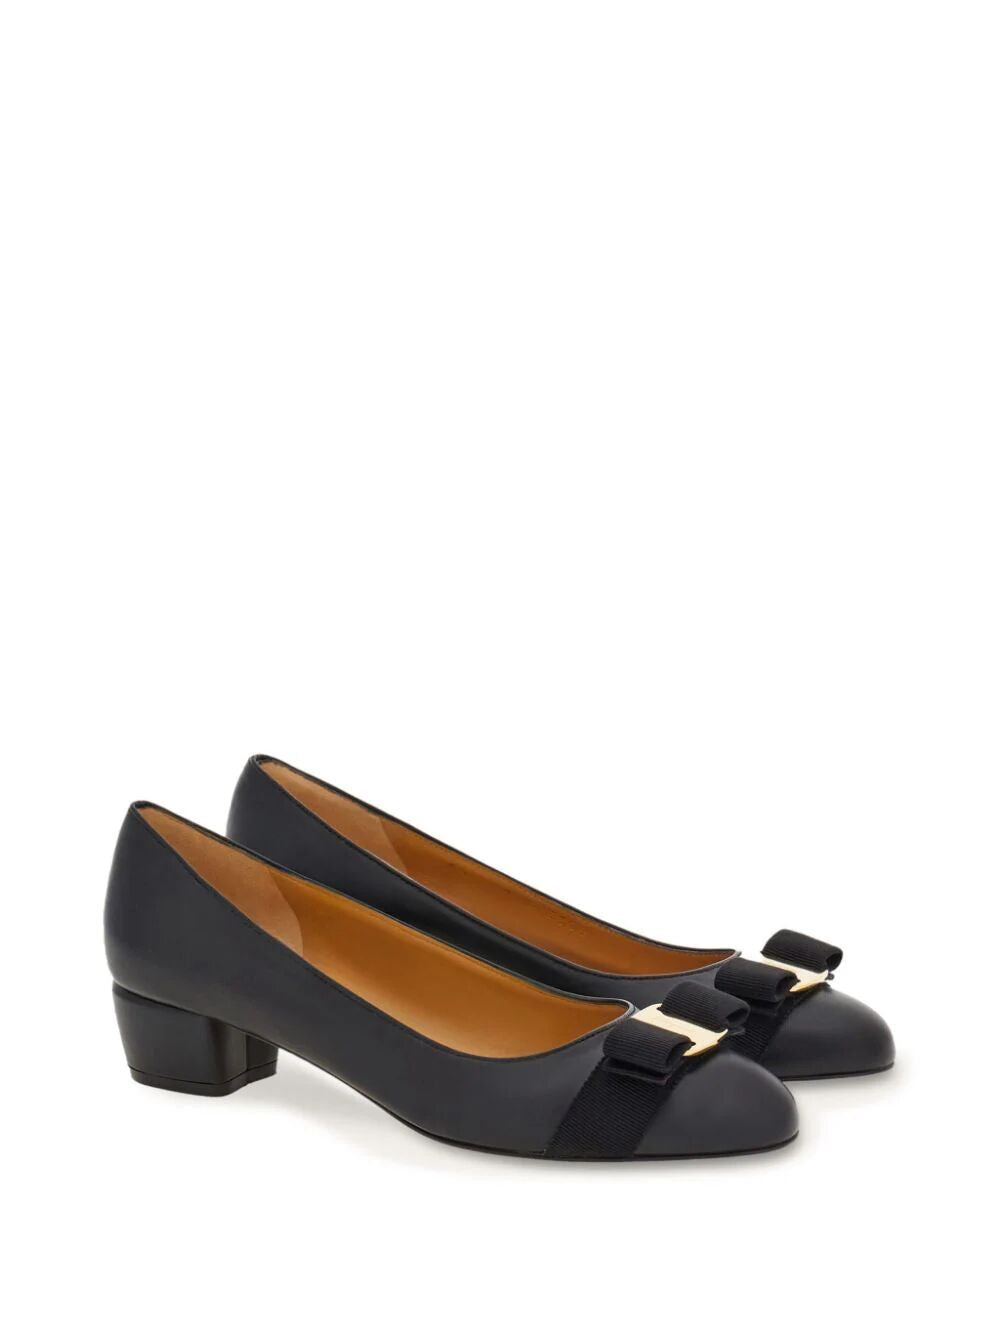 Shop Ferragamo Elegant Bow Pumps | Classic Black Leather Sandals For Women | Fw24 Collection